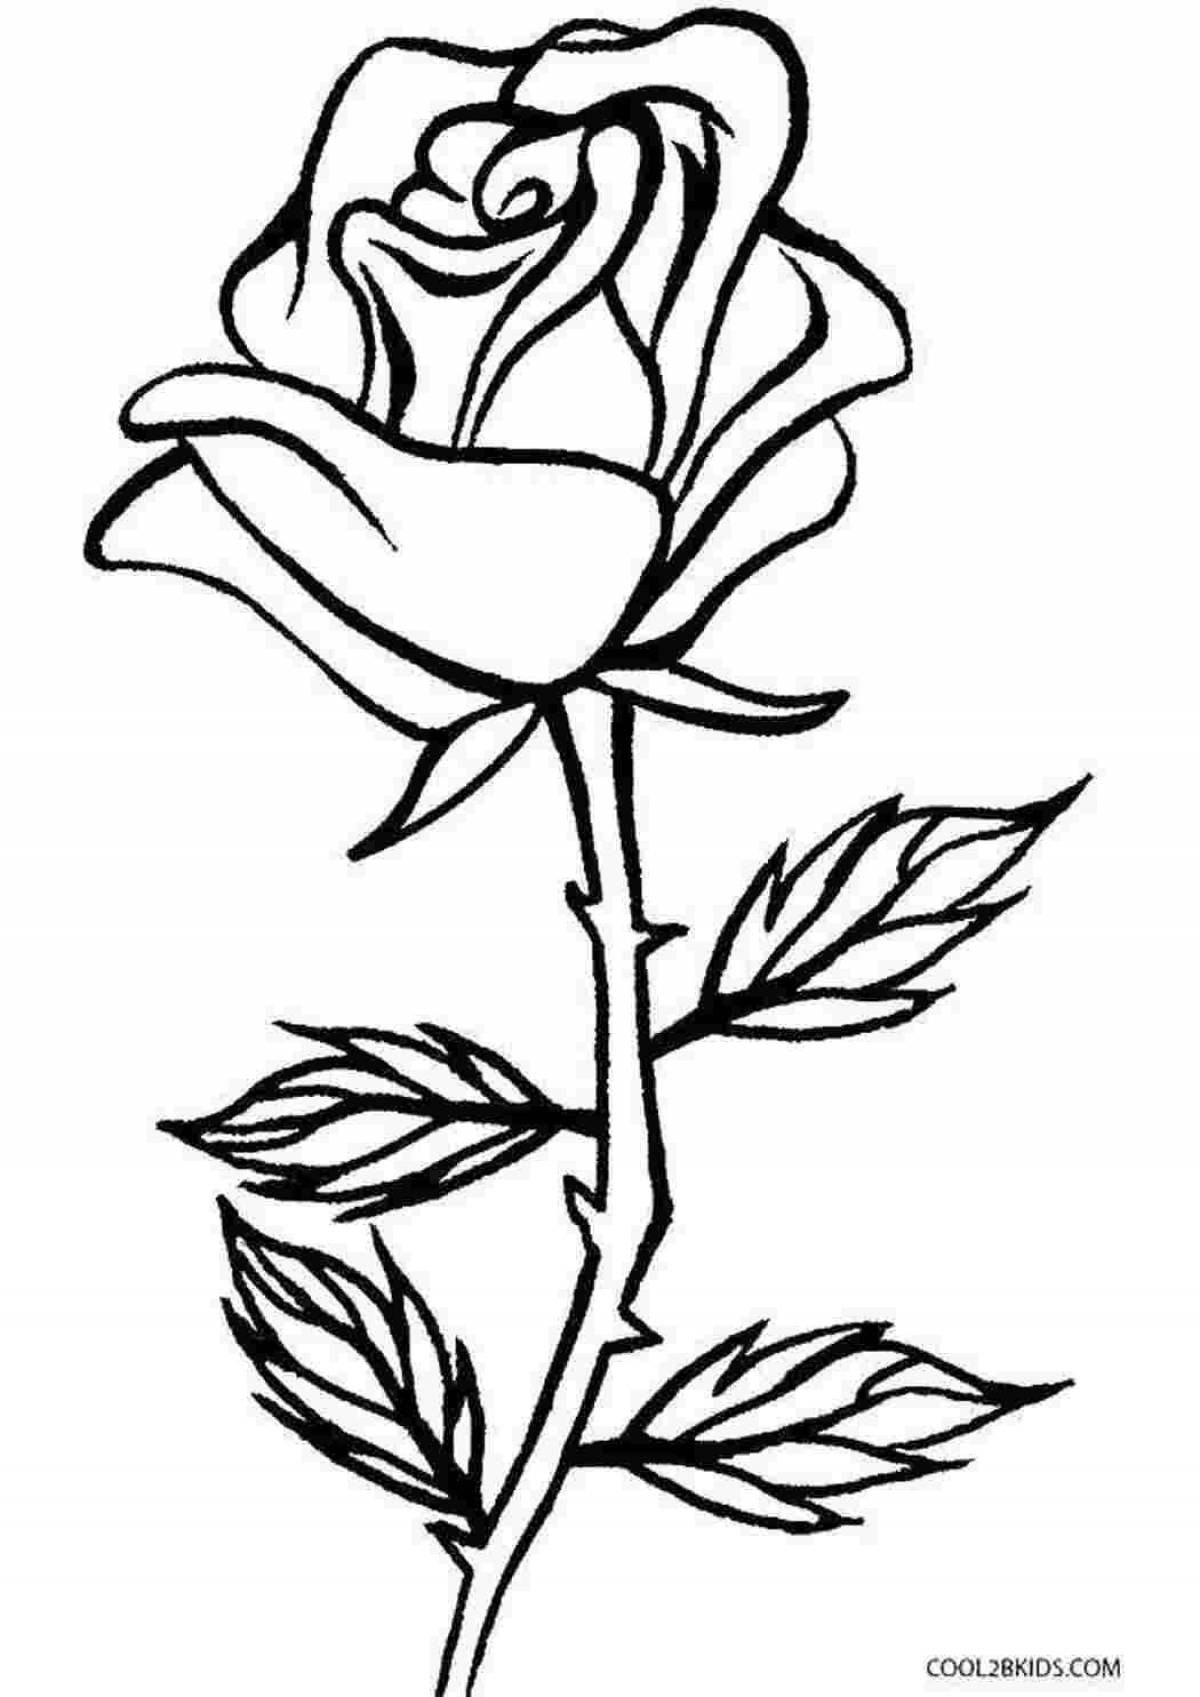 Радостная раскраска розы для детей 5-6 лет